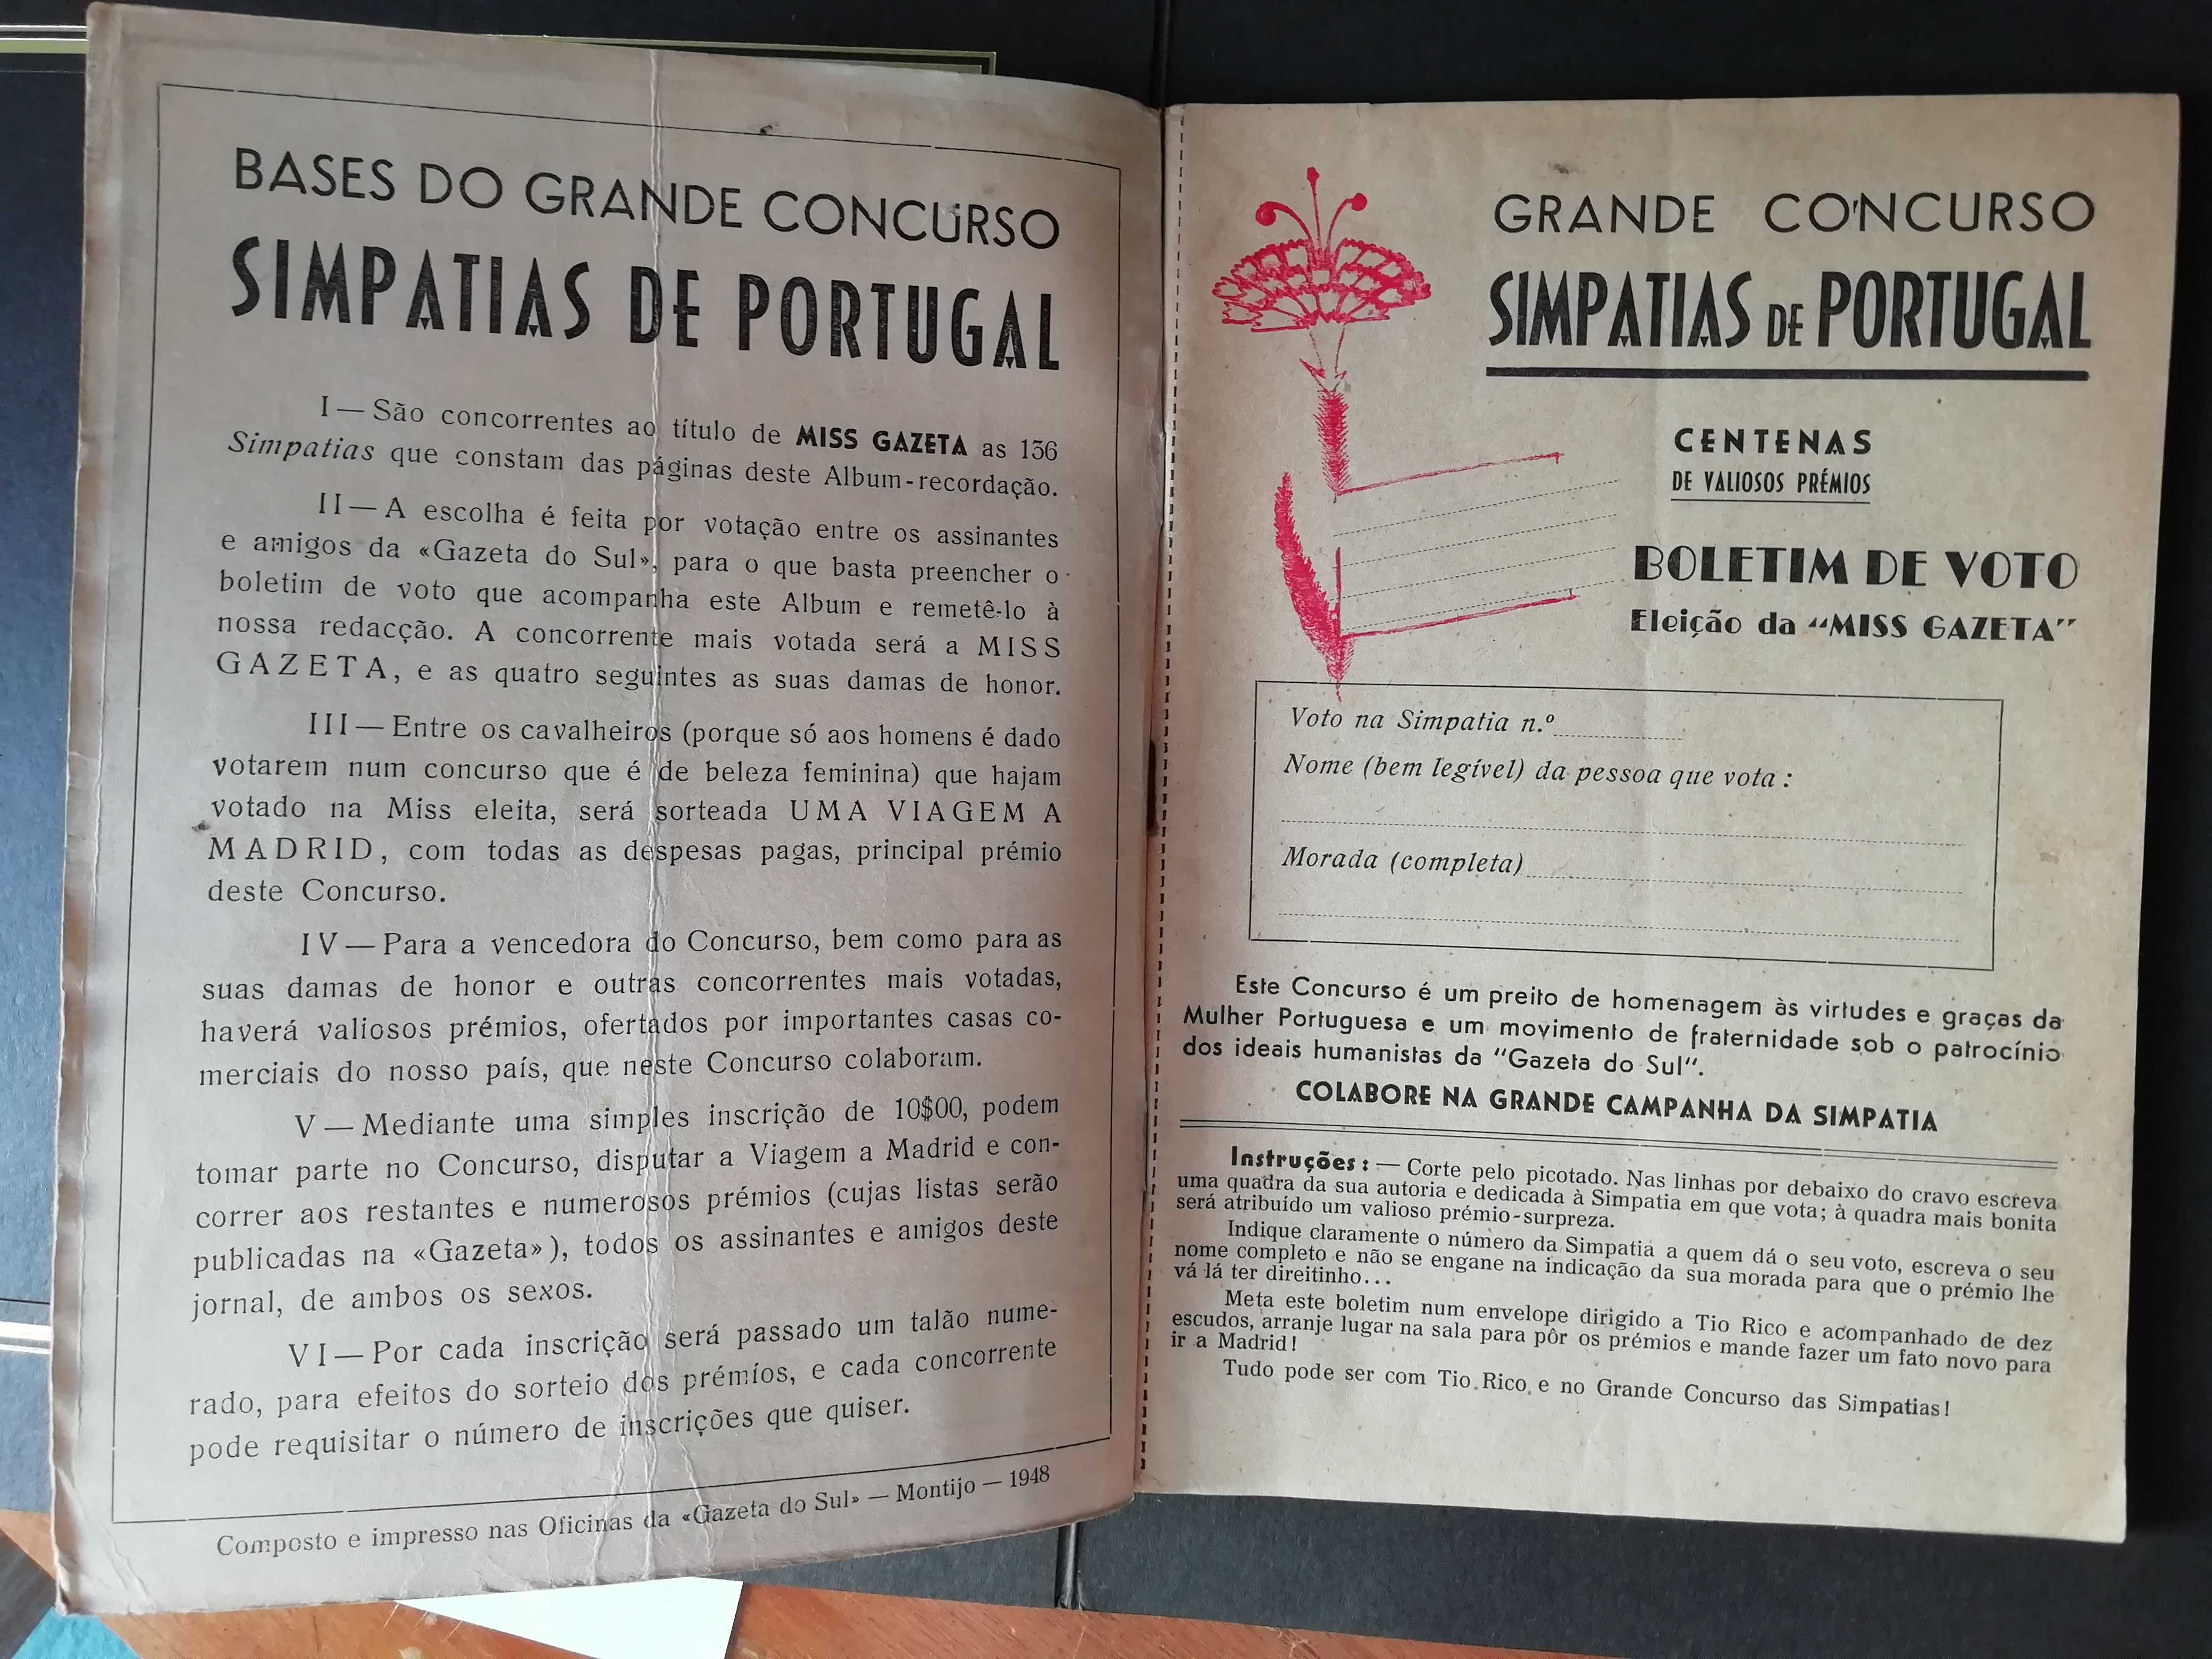 Revista "Simpatias de Portugal" de 1948 - Concurso Tio Rico